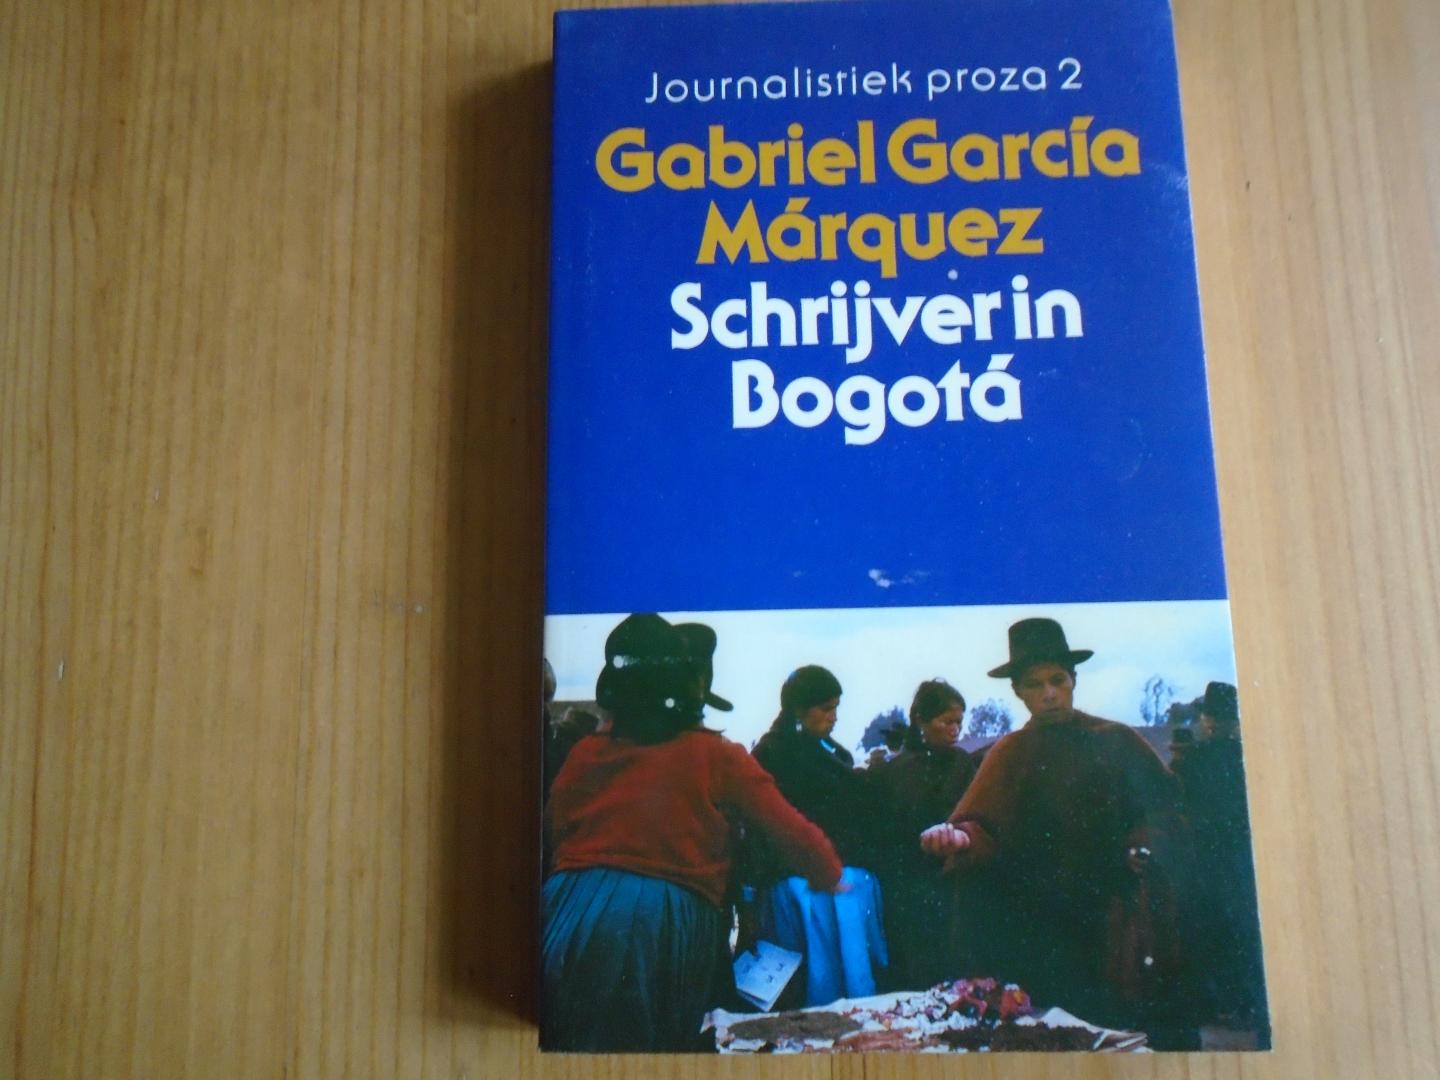 Márquez, Gabriel García - Schrijver in Bogotá. Journalistiek proza 2